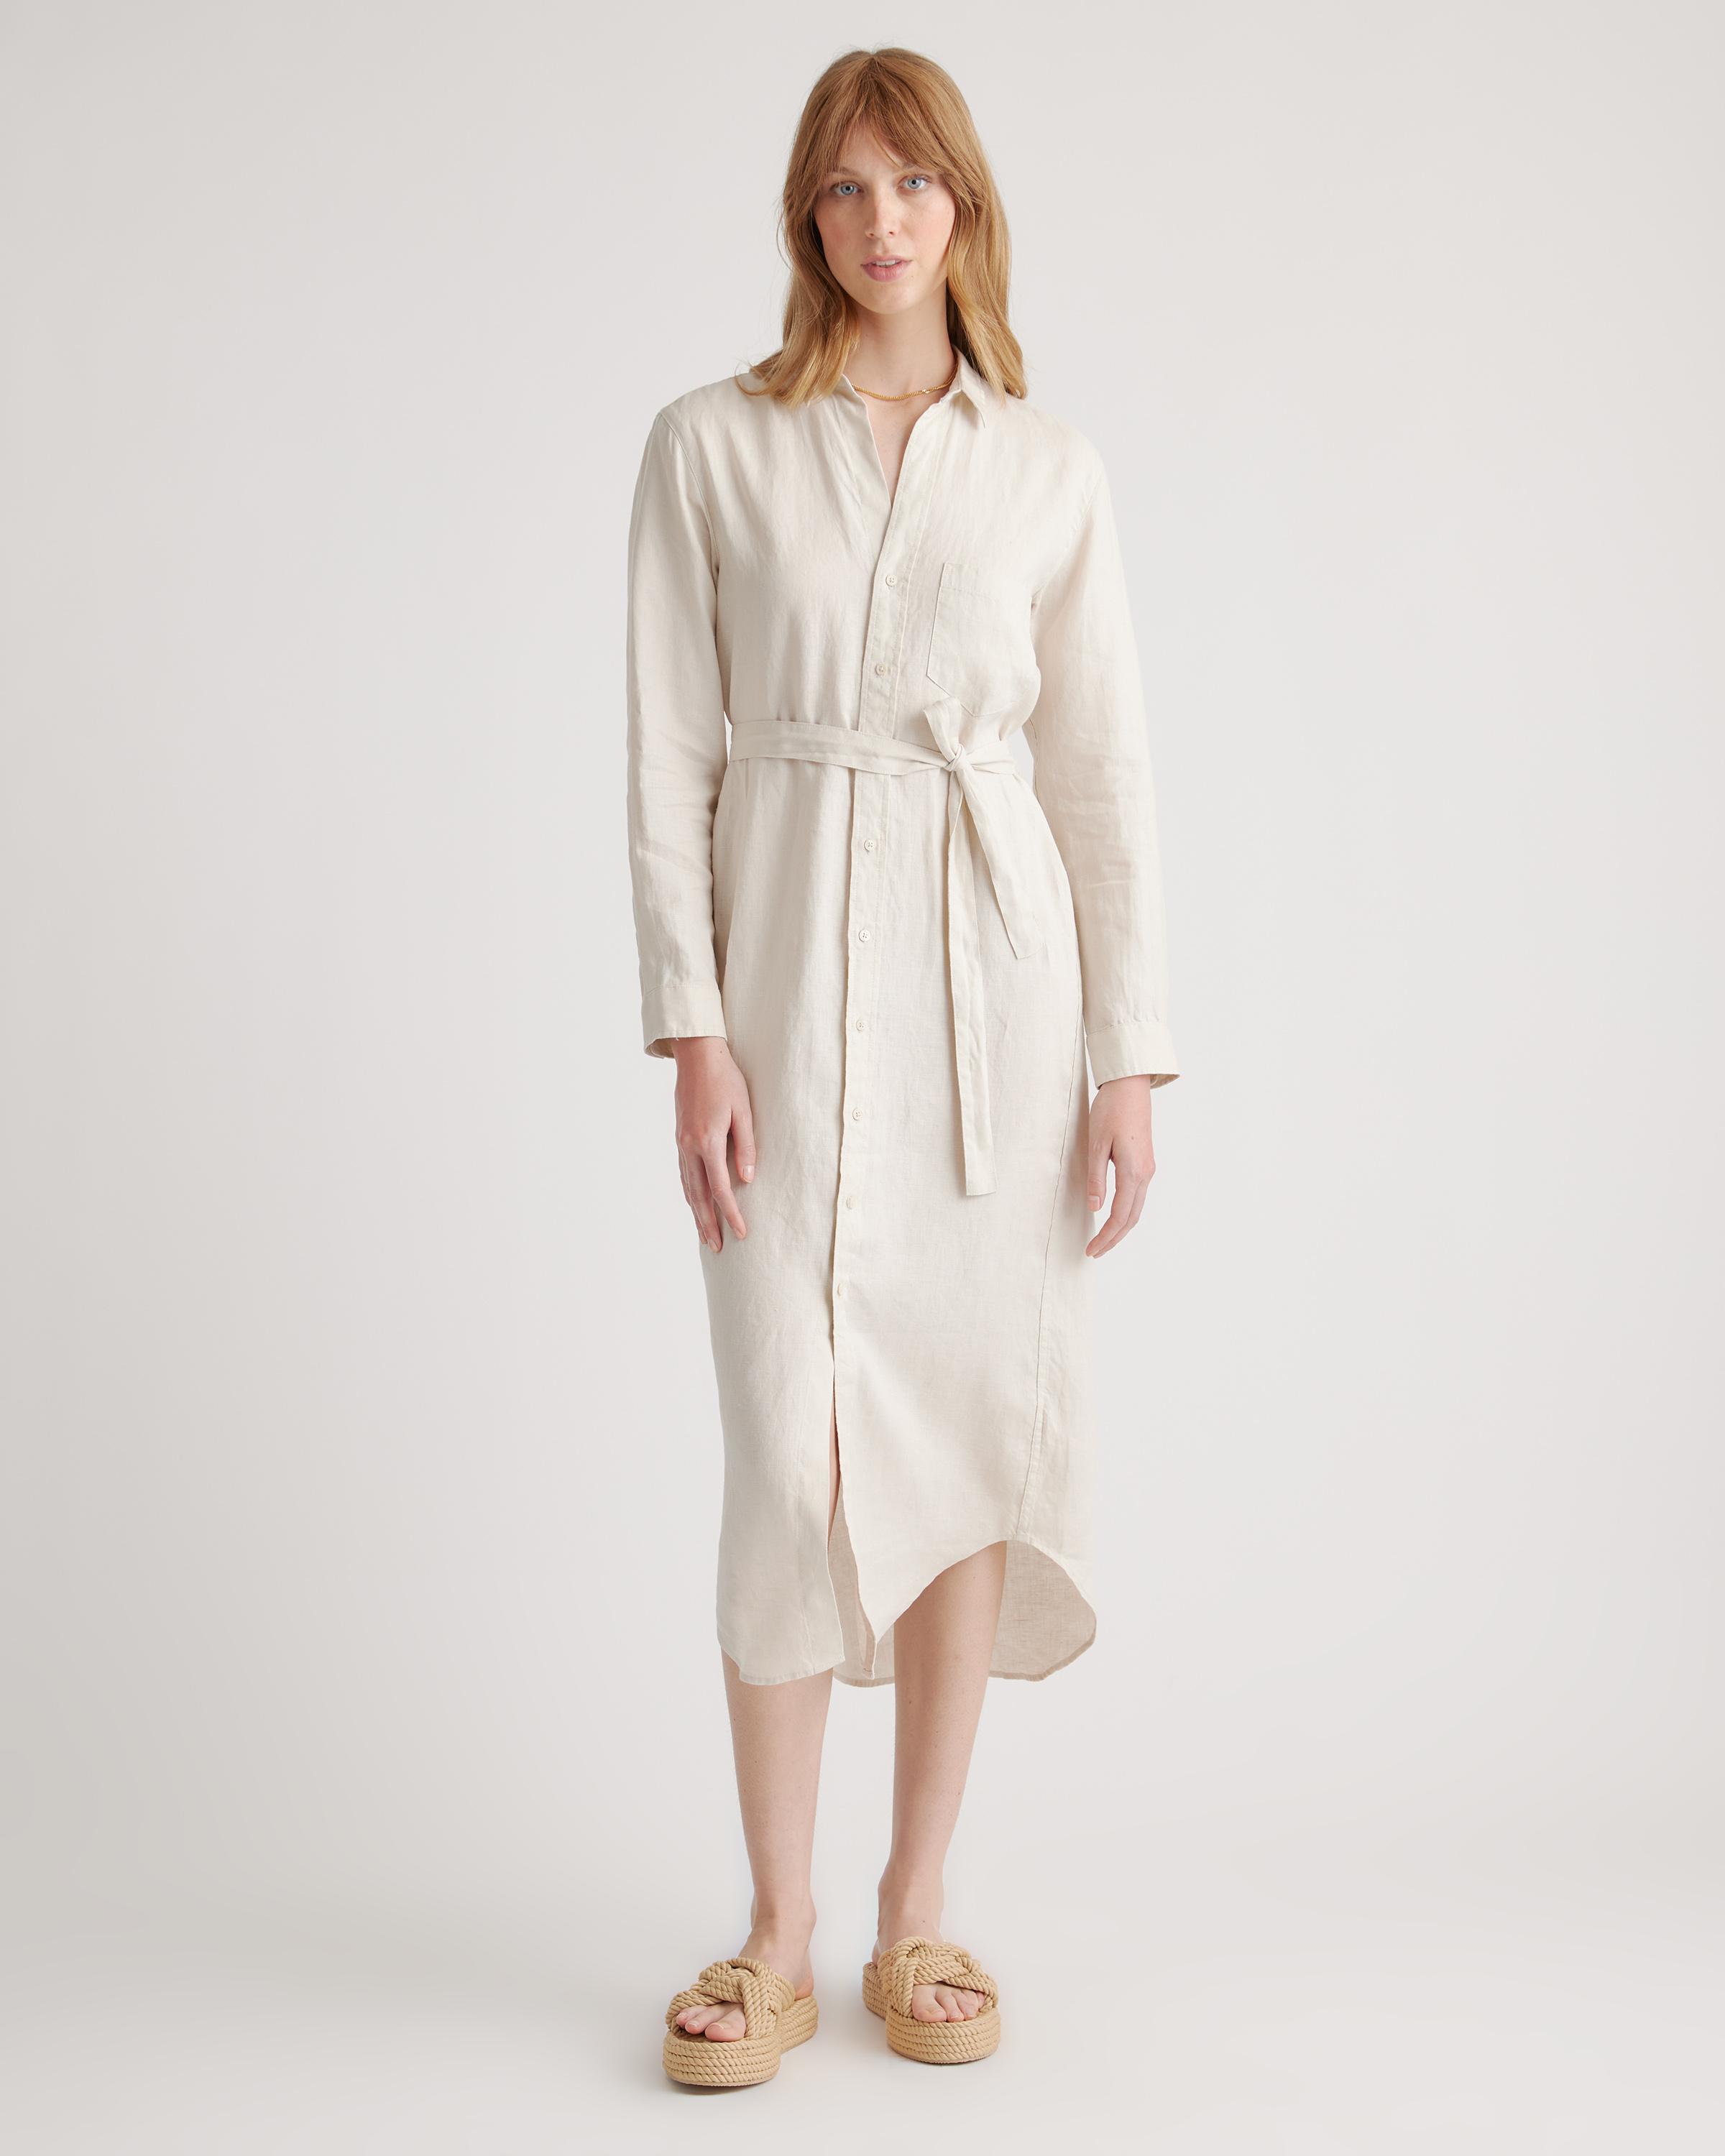 https://cdna.lystit.com/photos/quince/91c77db3/quince-designer-Sand-100-European-Linen-Maxi-Shirt-Dress.jpeg